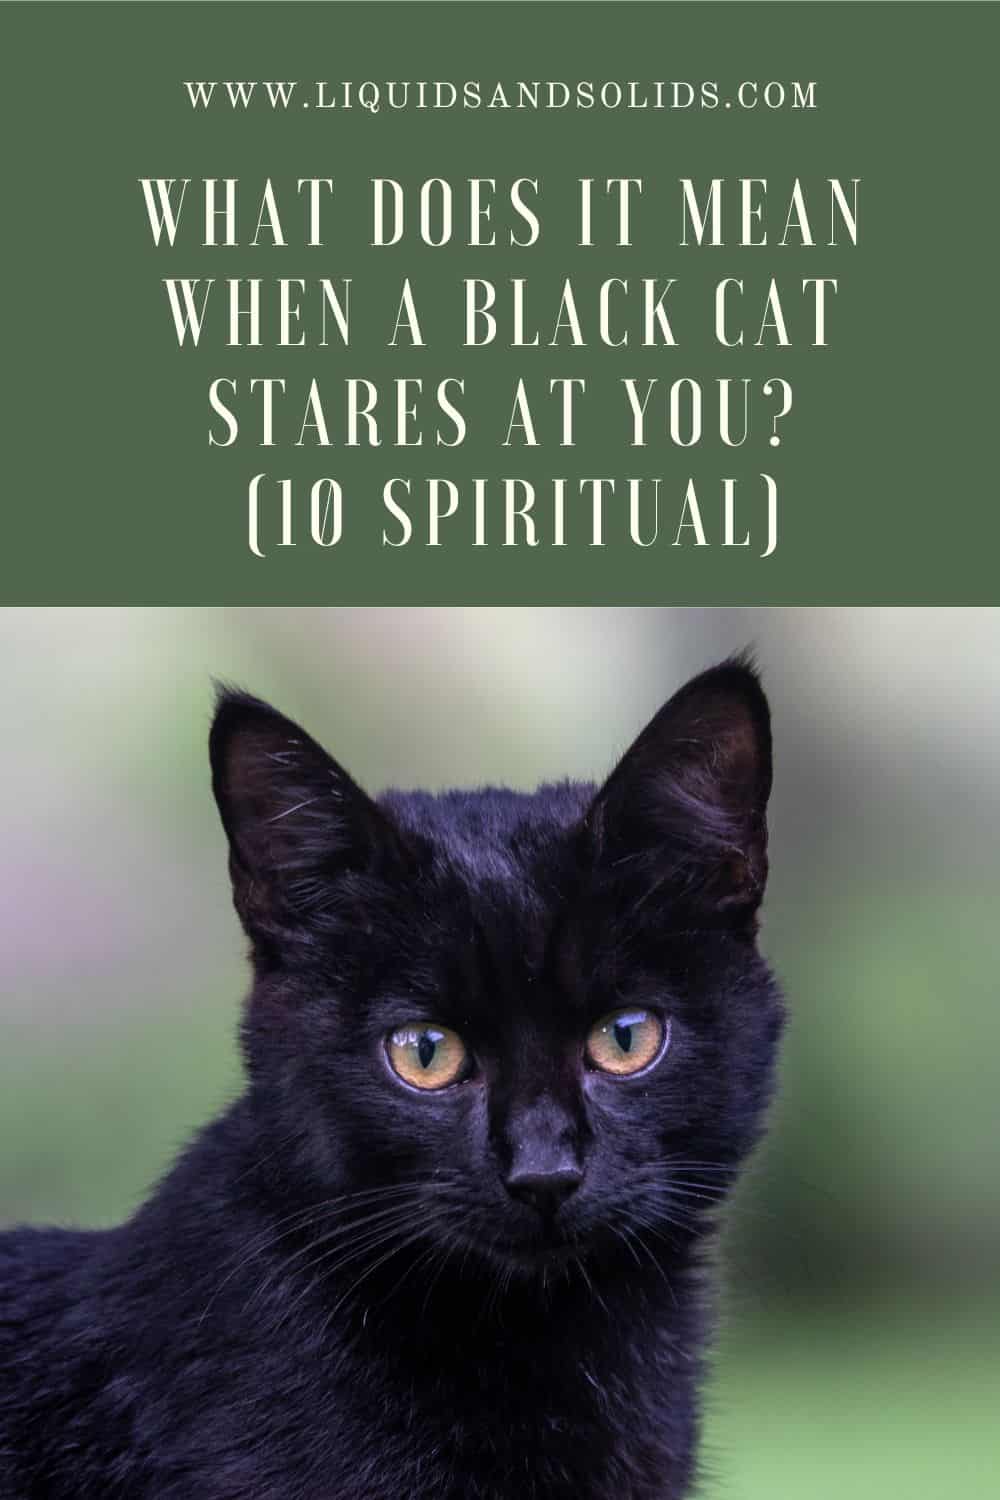  Mit jelent, ha egy fekete macska bámul rád? (10 spirituális jelentés)